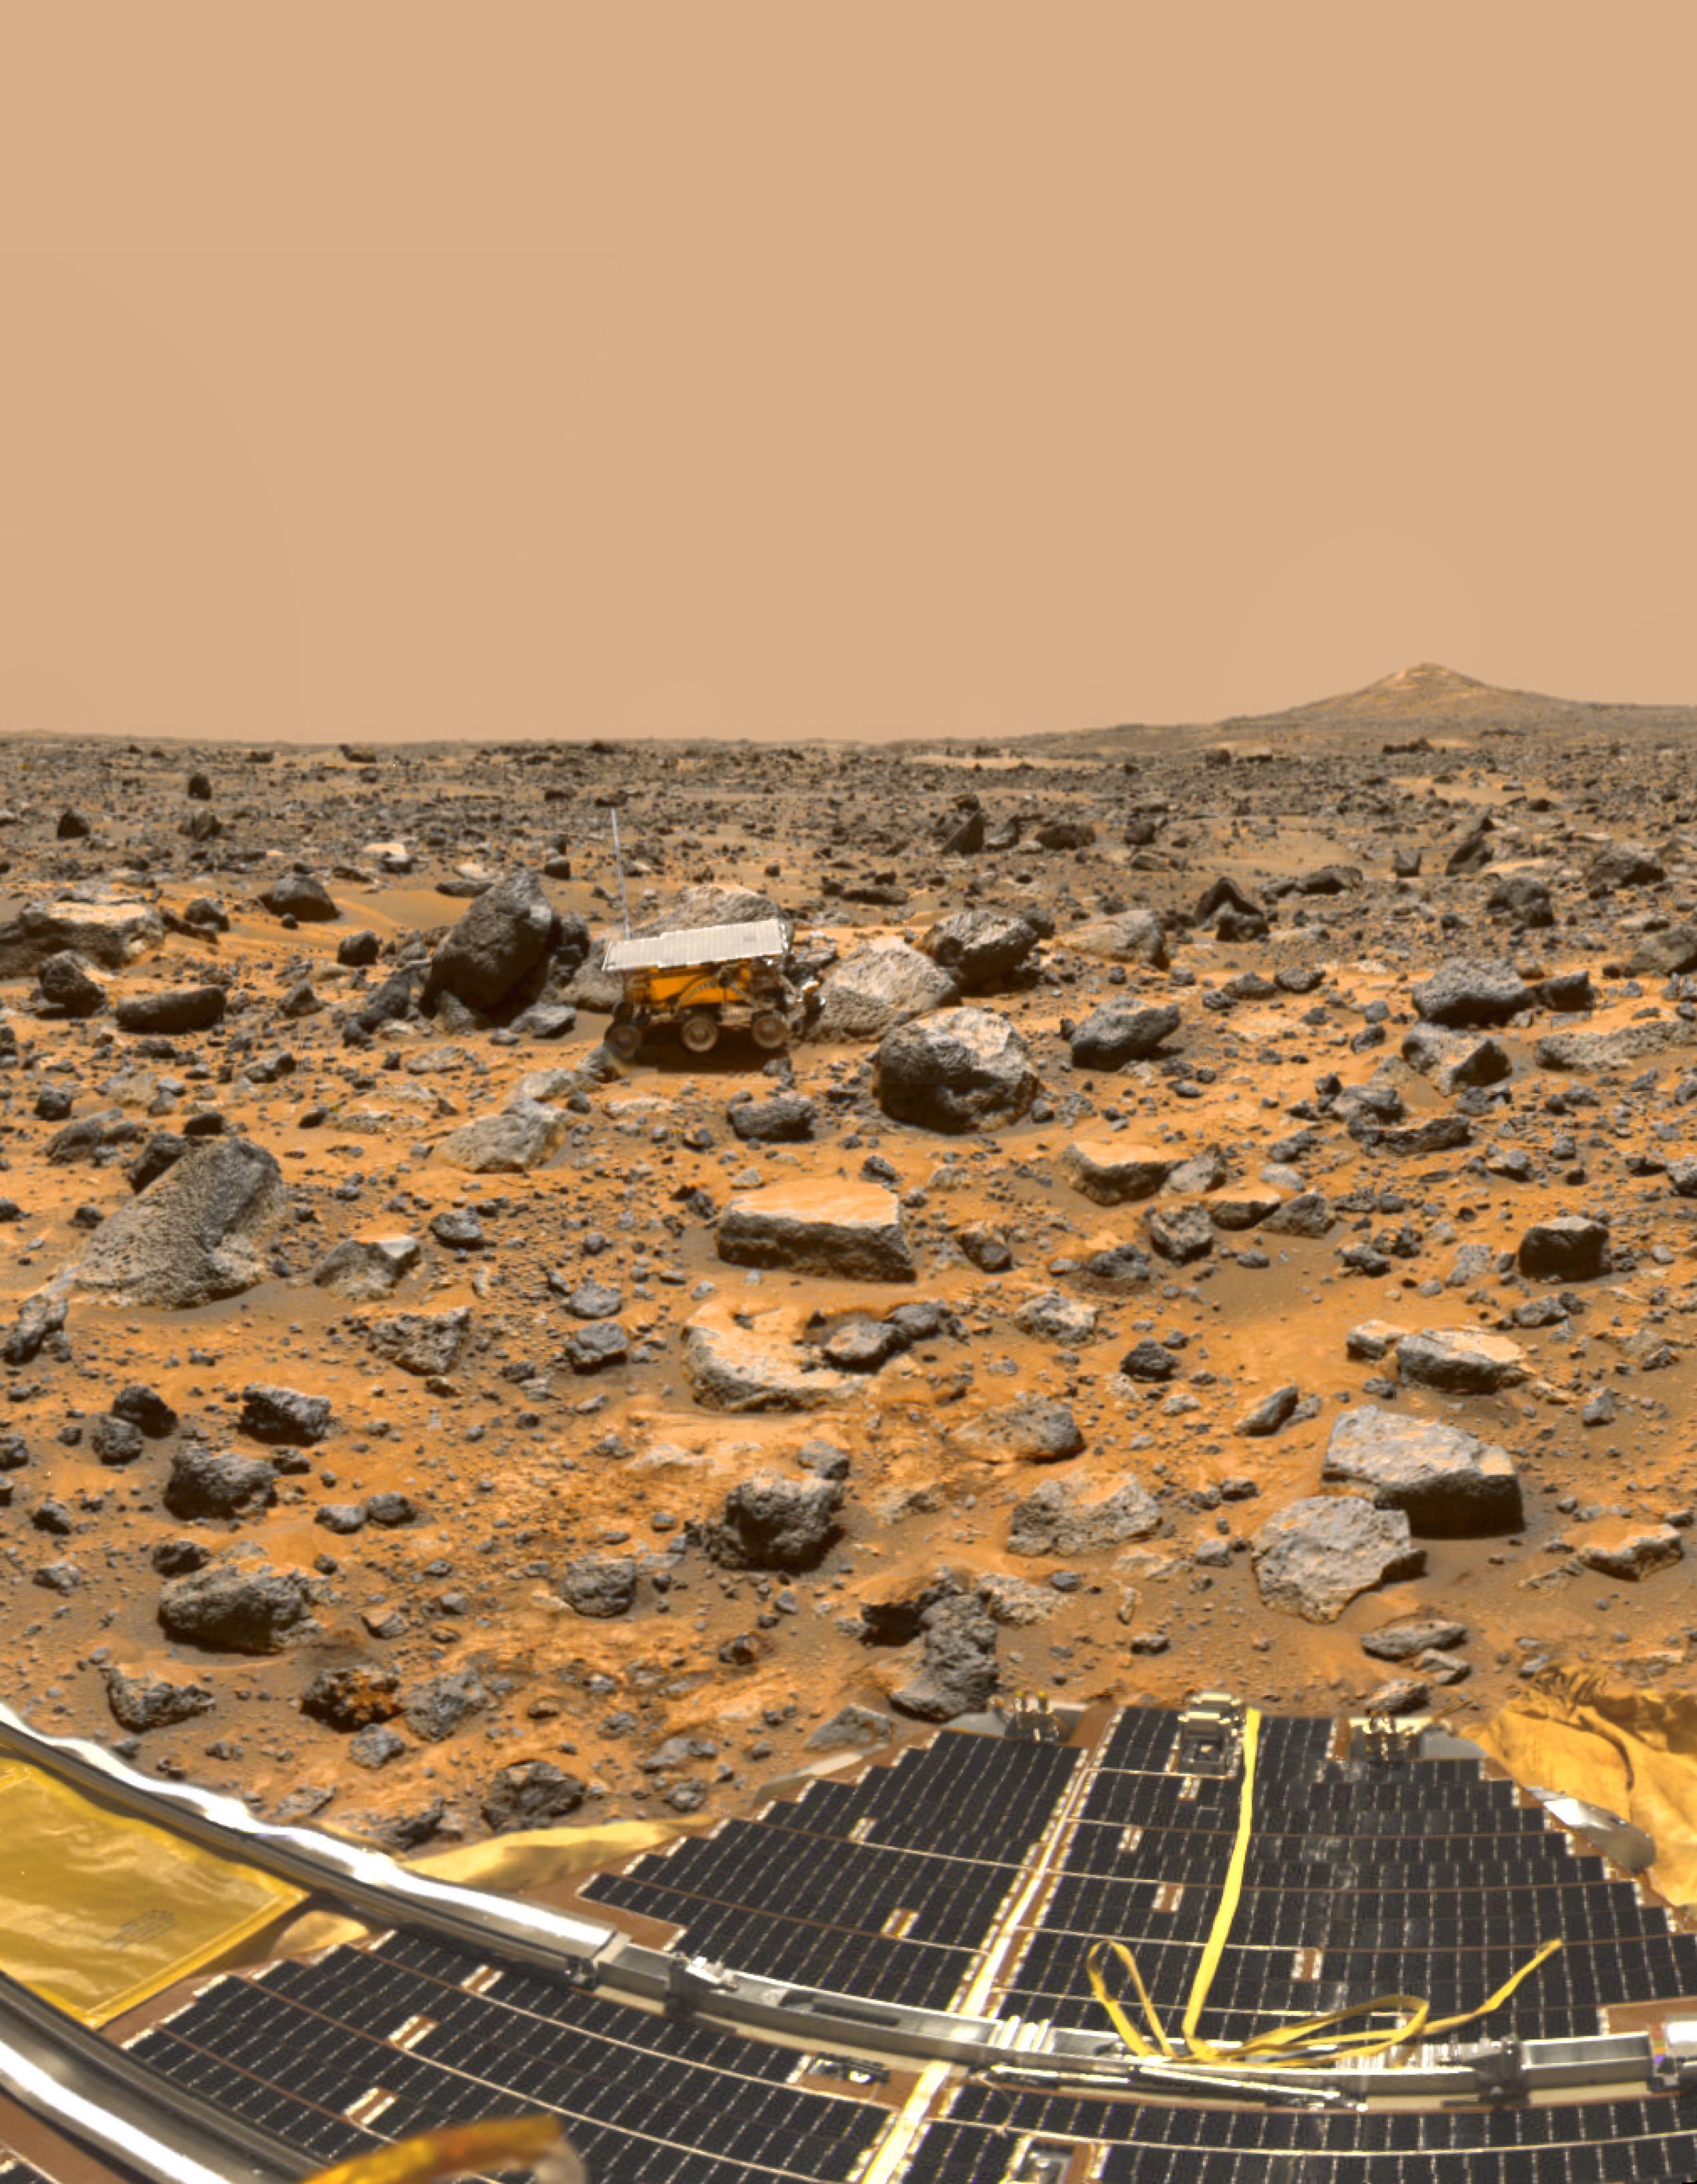 Pathfinder on Mars – NASA Mars Exploration